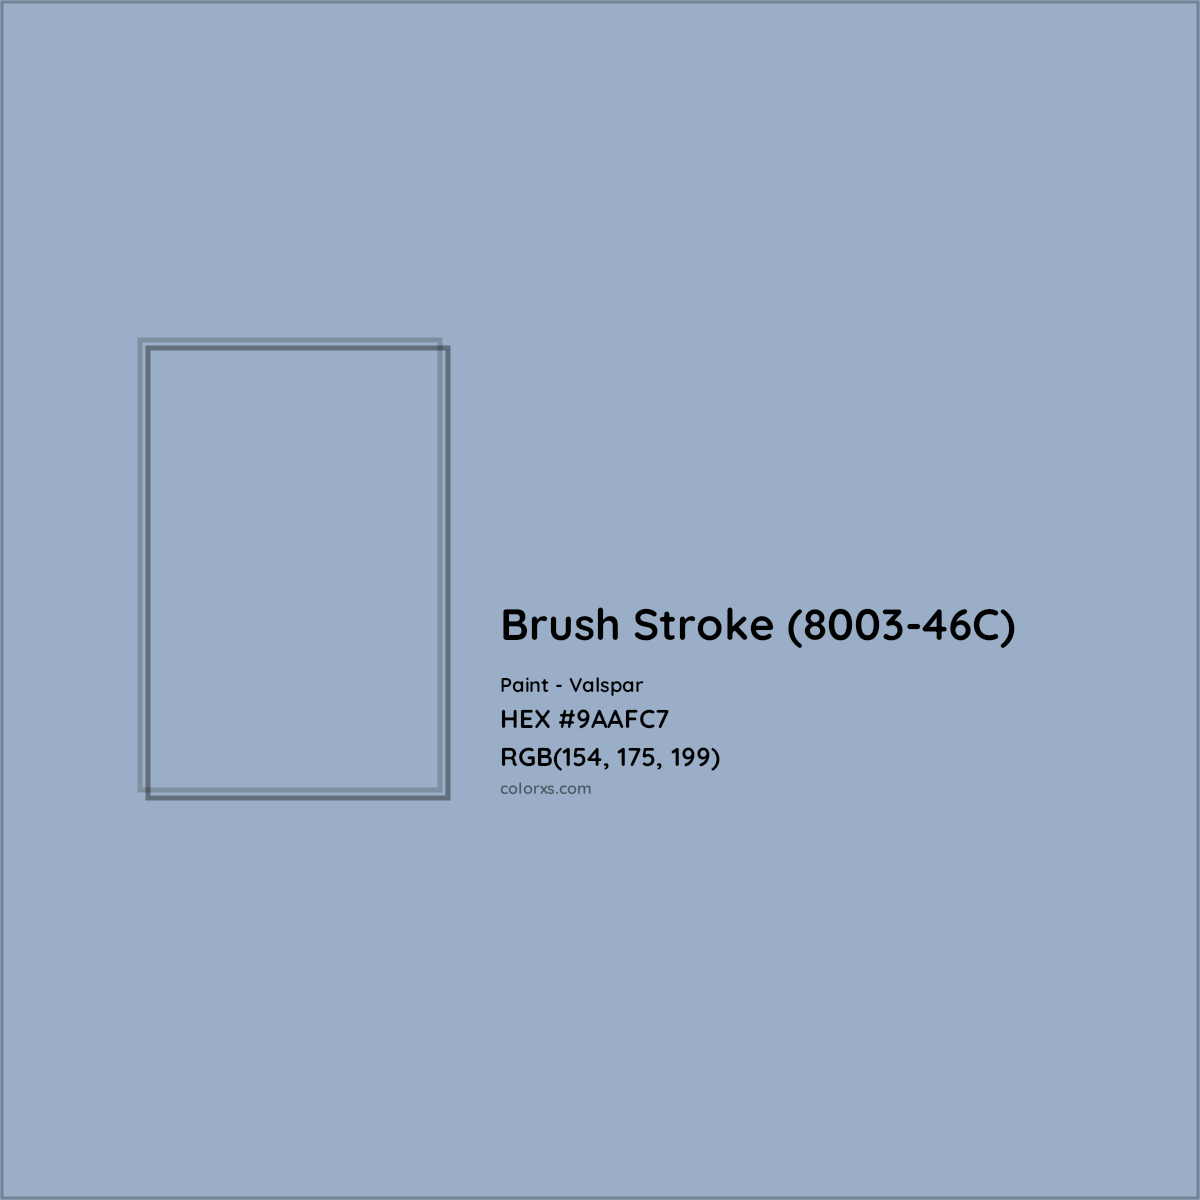 HEX #9AAFC7 Brush Stroke (8003-46C) Paint Valspar - Color Code